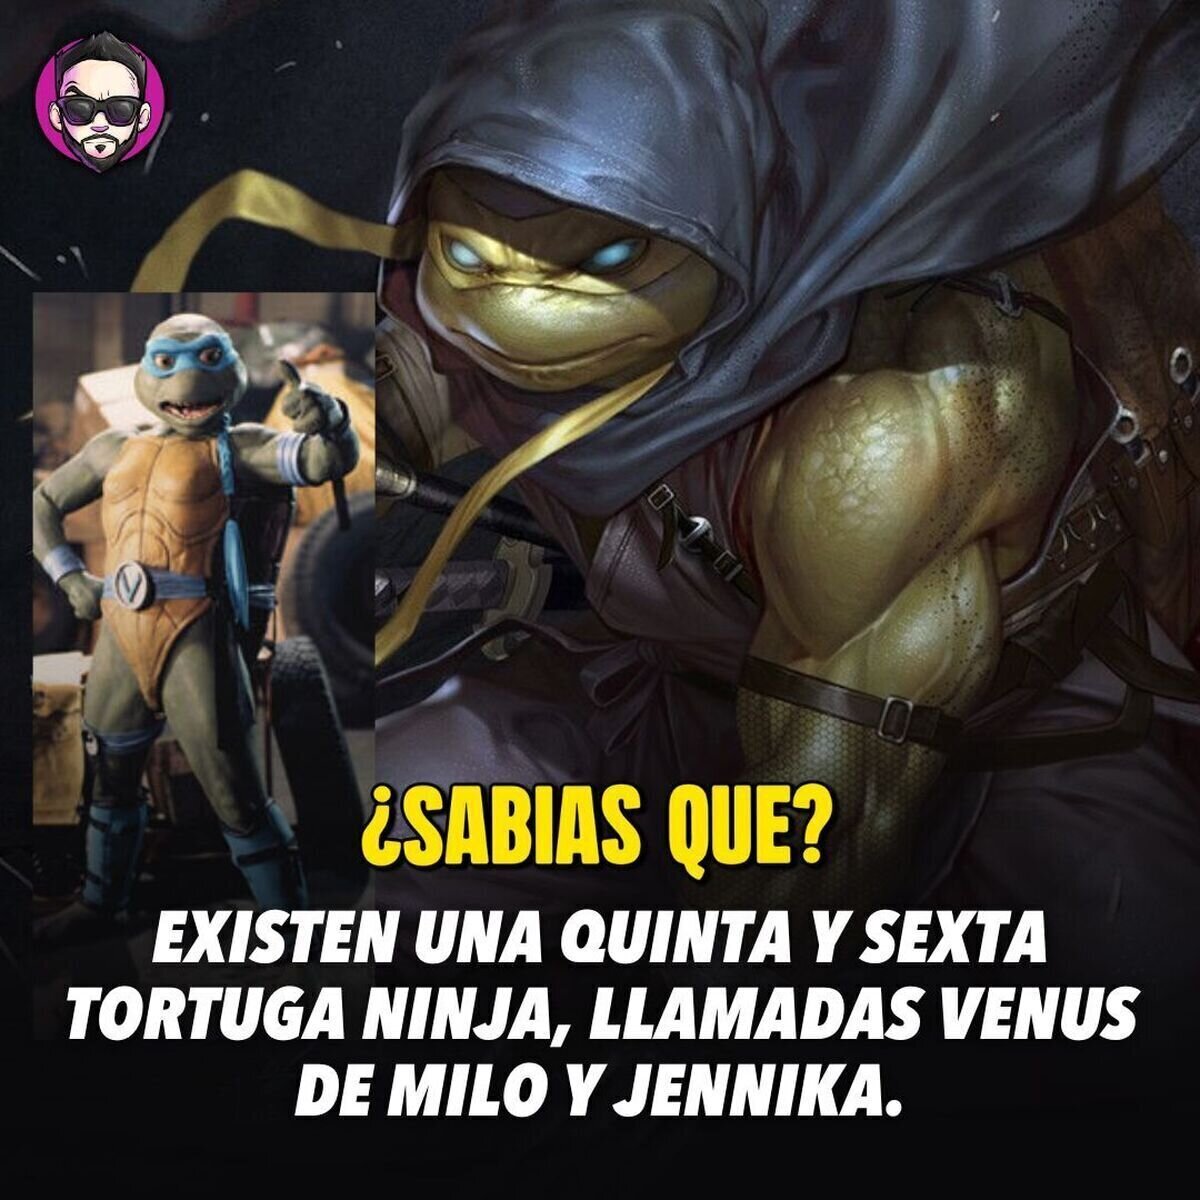 Venus de Milo apareció en la serie "TMNT the next mutation" de 1997, mientras que Jennika hizo su debut en los cómics de 2015